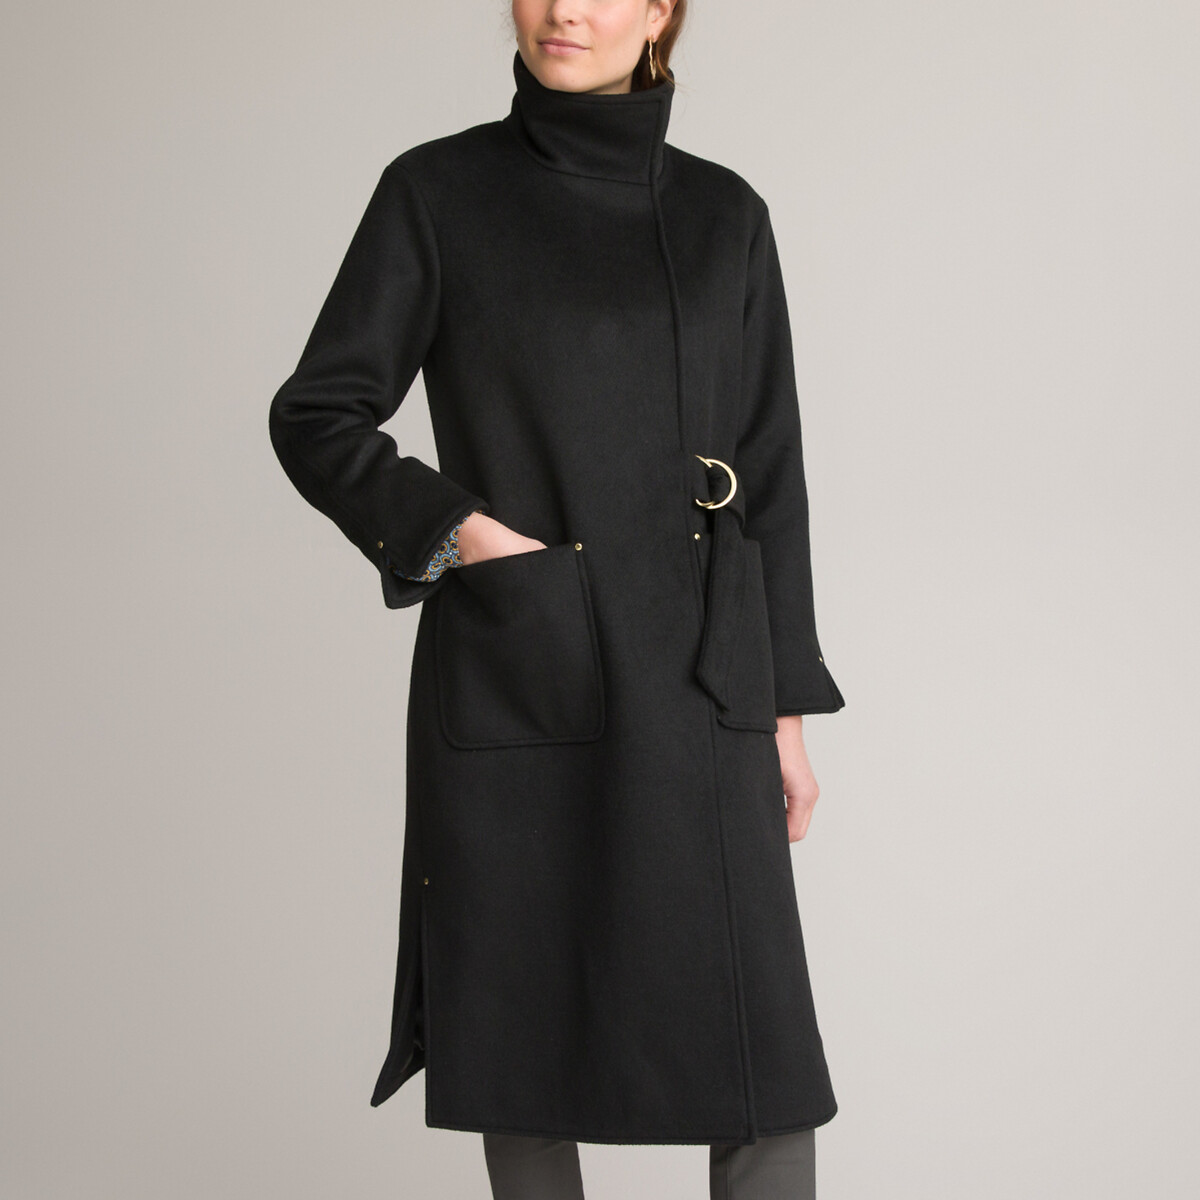 Пальто Длинное асимметричное с завязками 46 (FR) - 52 (RUS) черный LaRedoute, размер 46 (FR) - 52 (RUS) Пальто Длинное асимметричное с завязками 46 (FR) - 52 (RUS) черный - фото 1